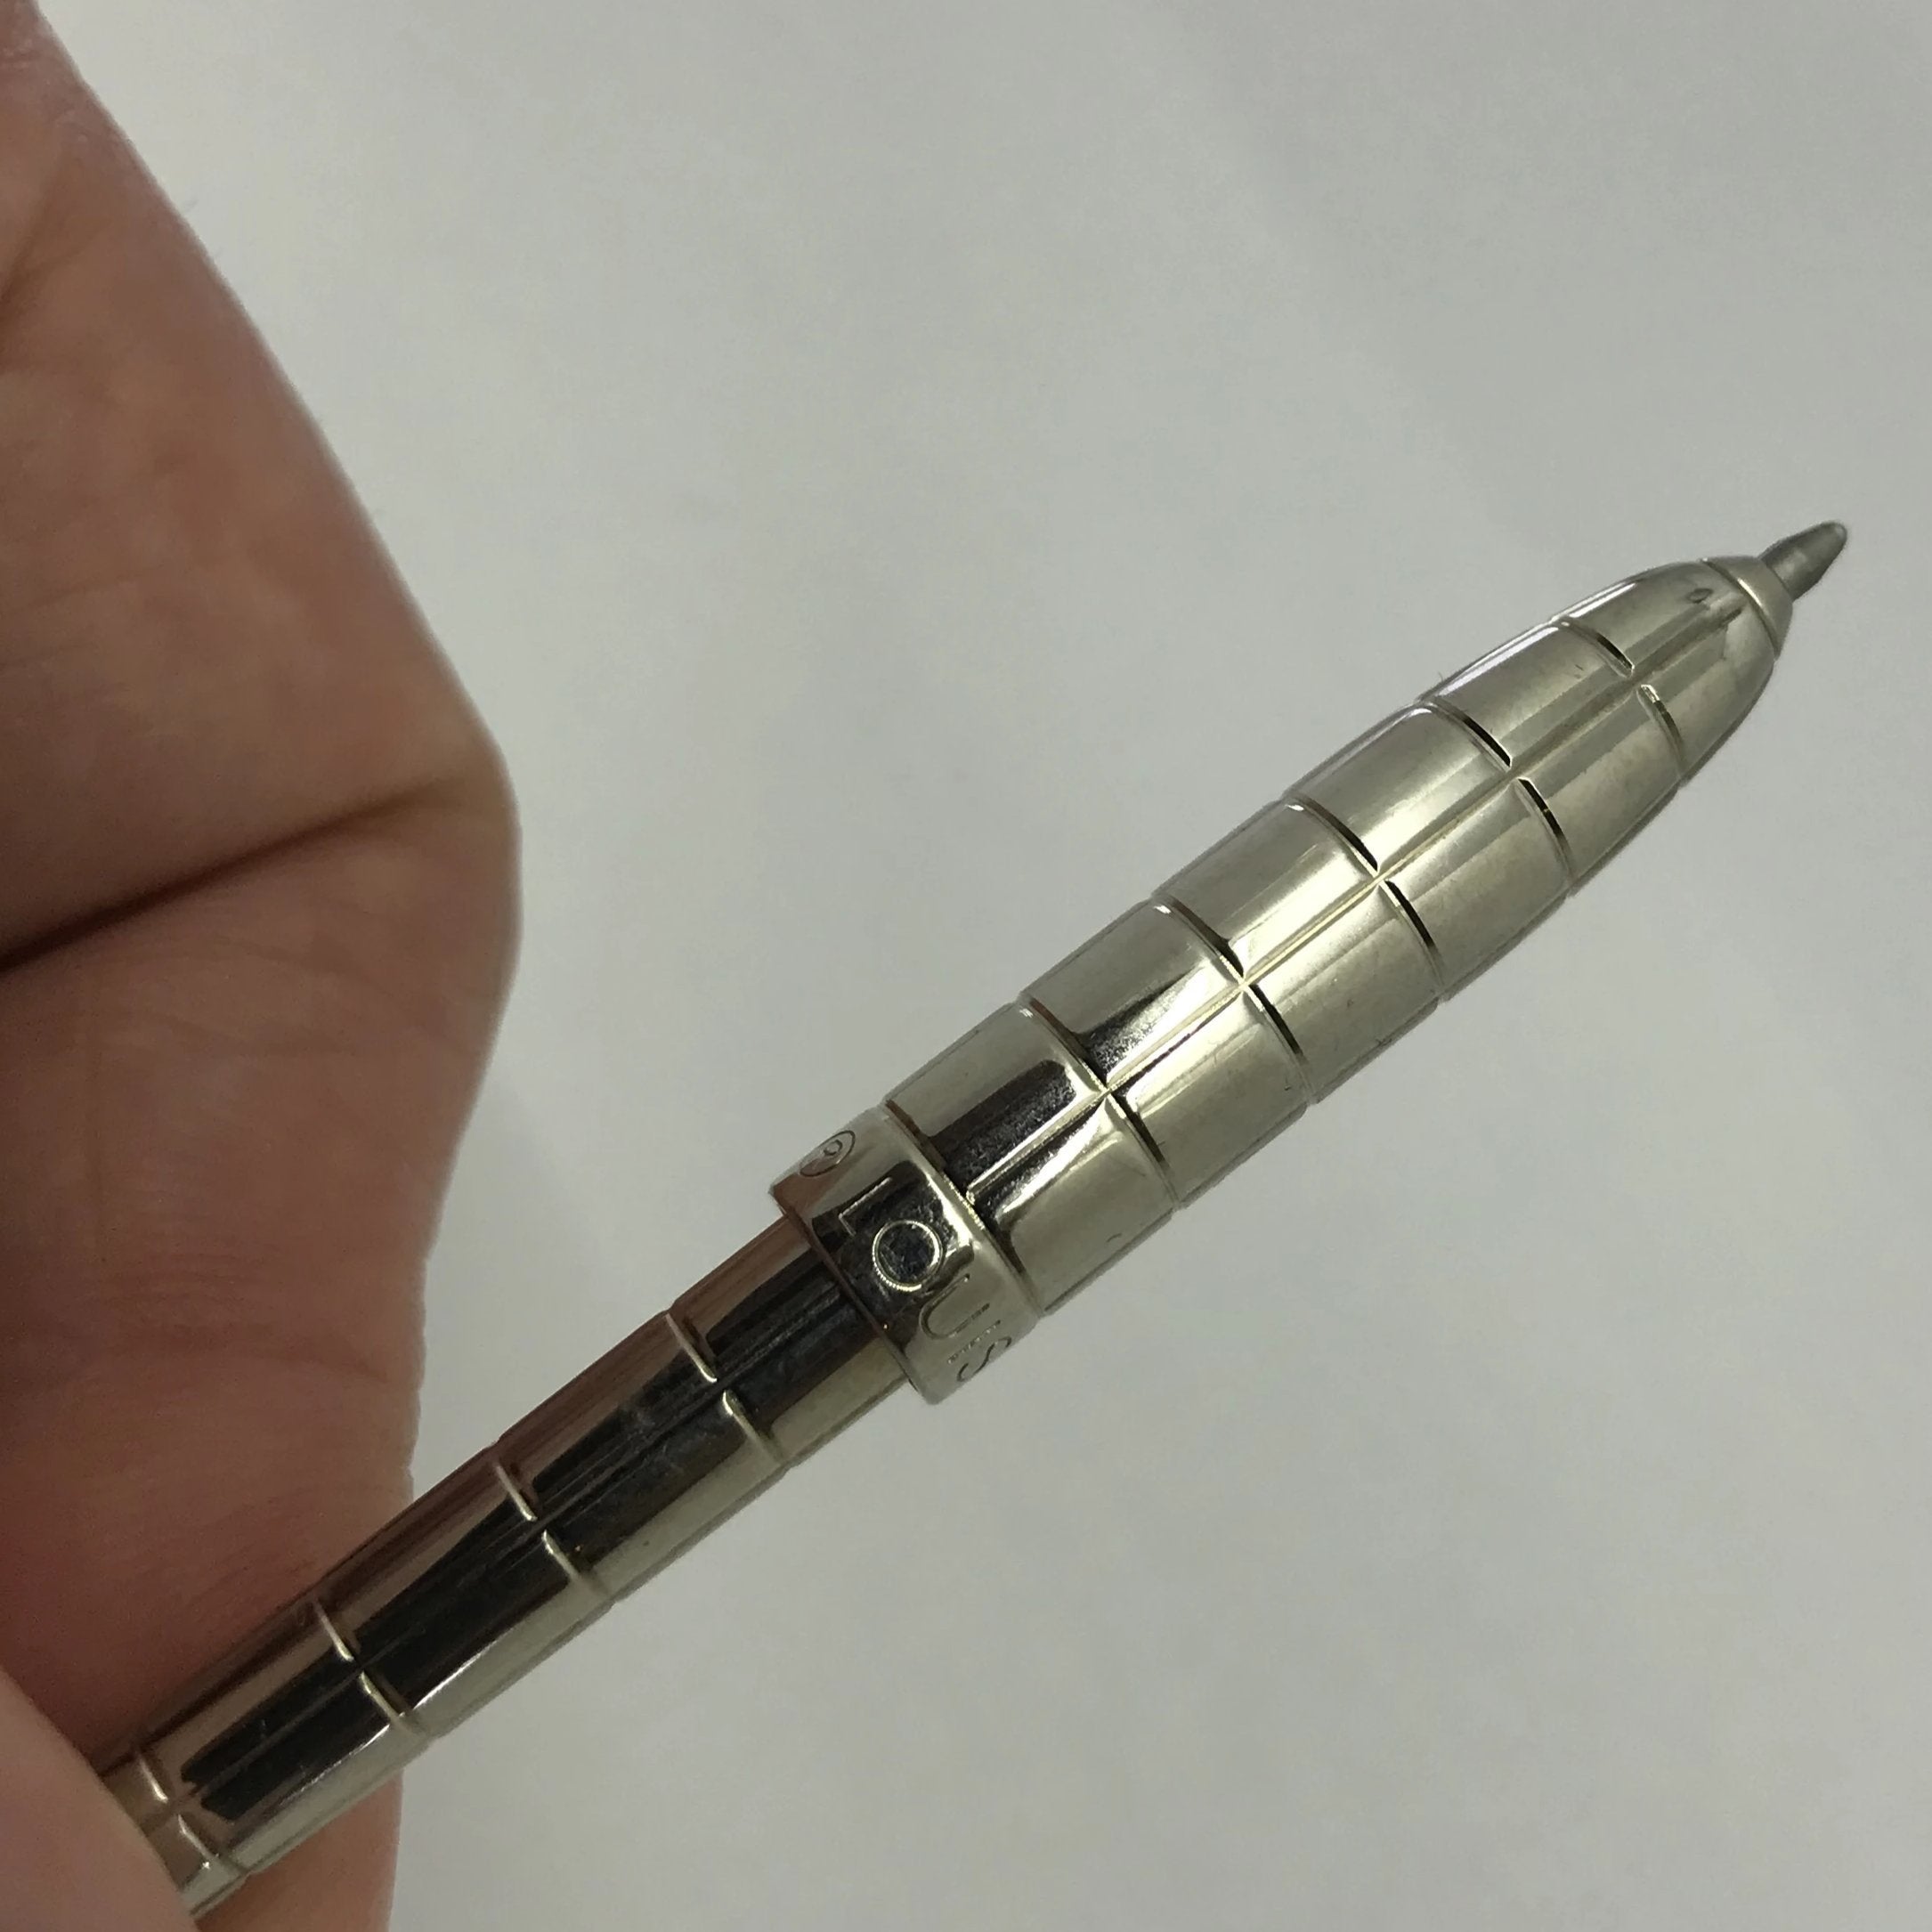 Louis Vuitton fountain pen